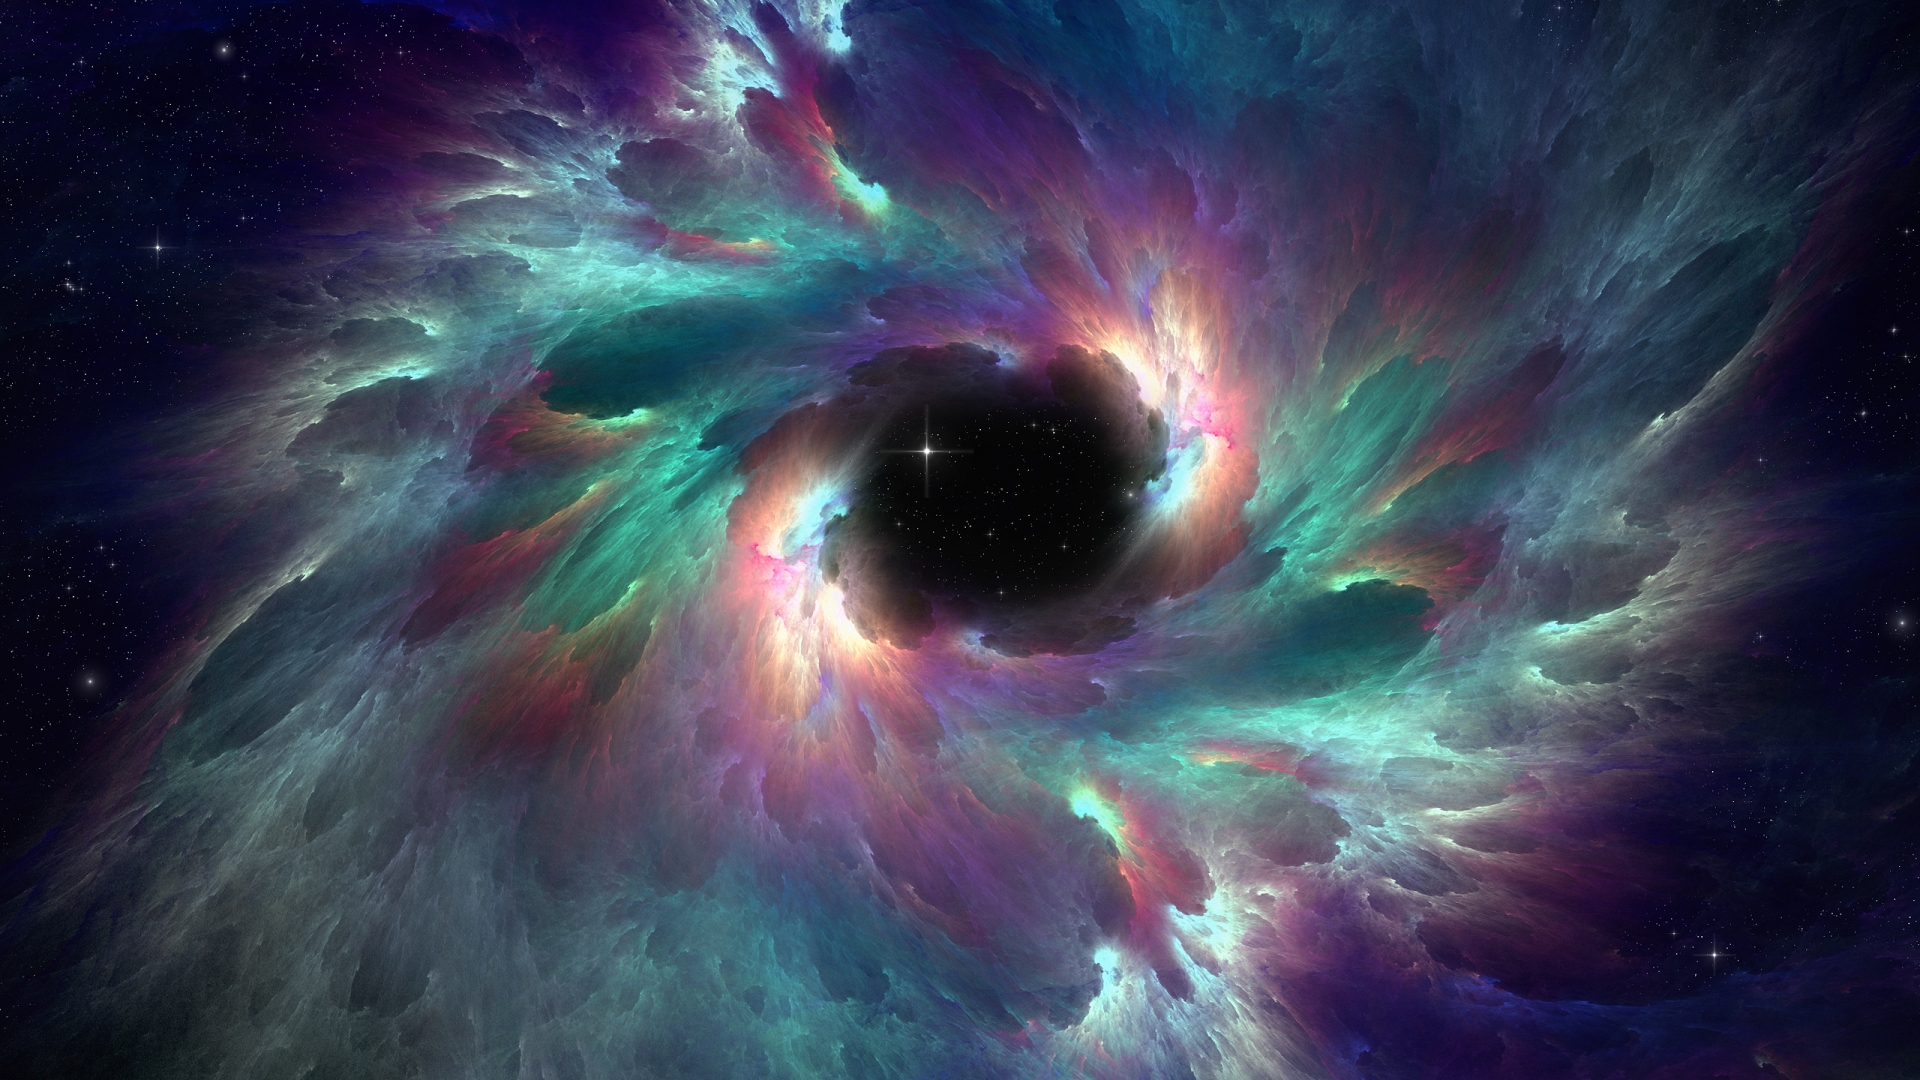 Nebula Wallpaper HD   Pics about space